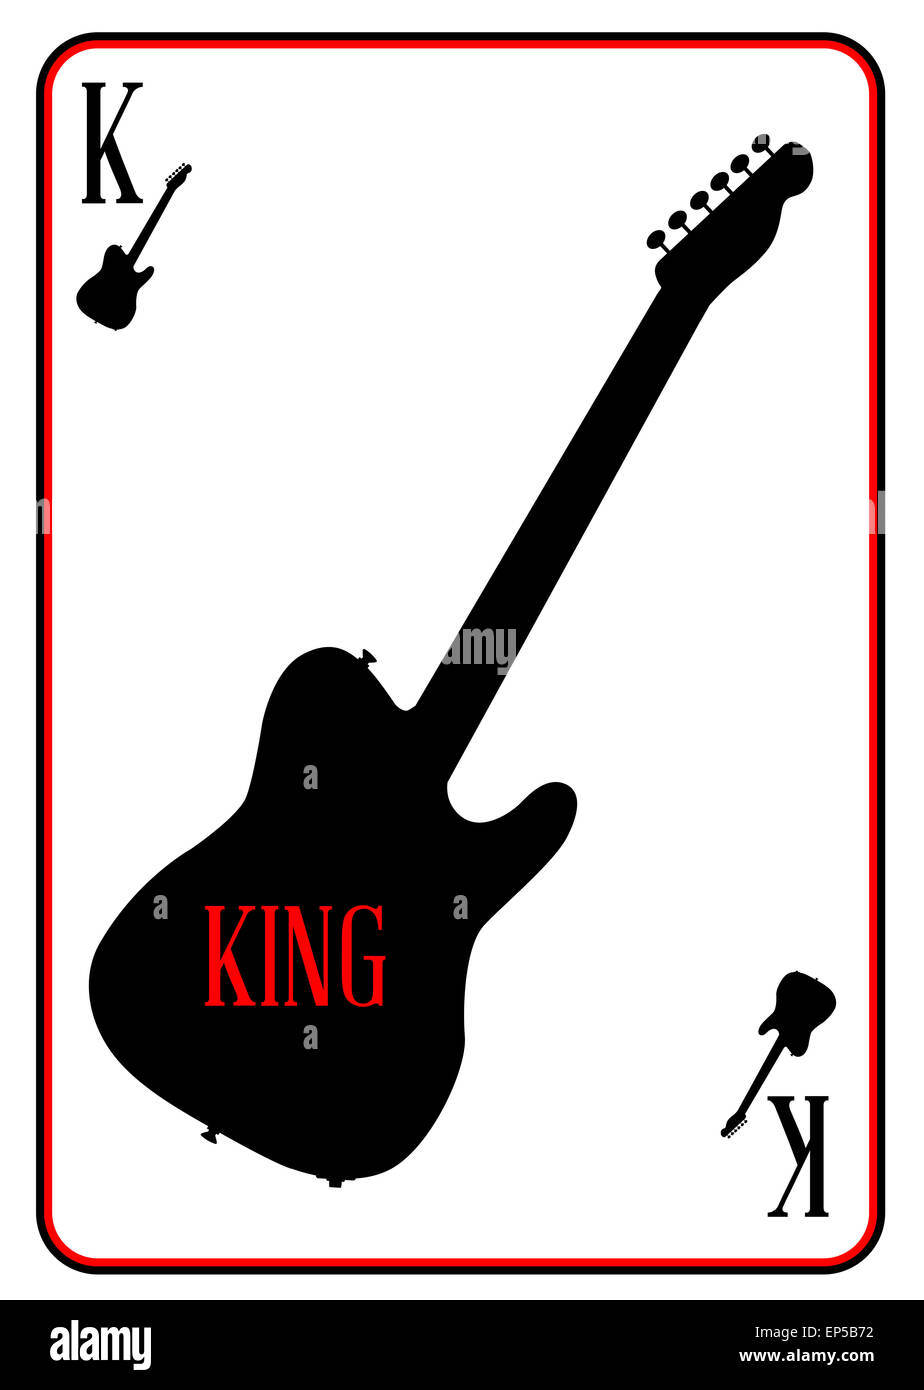 Une guitare utilisée comme motif le roi dans un jeu de carte Photo Stock -  Alamy